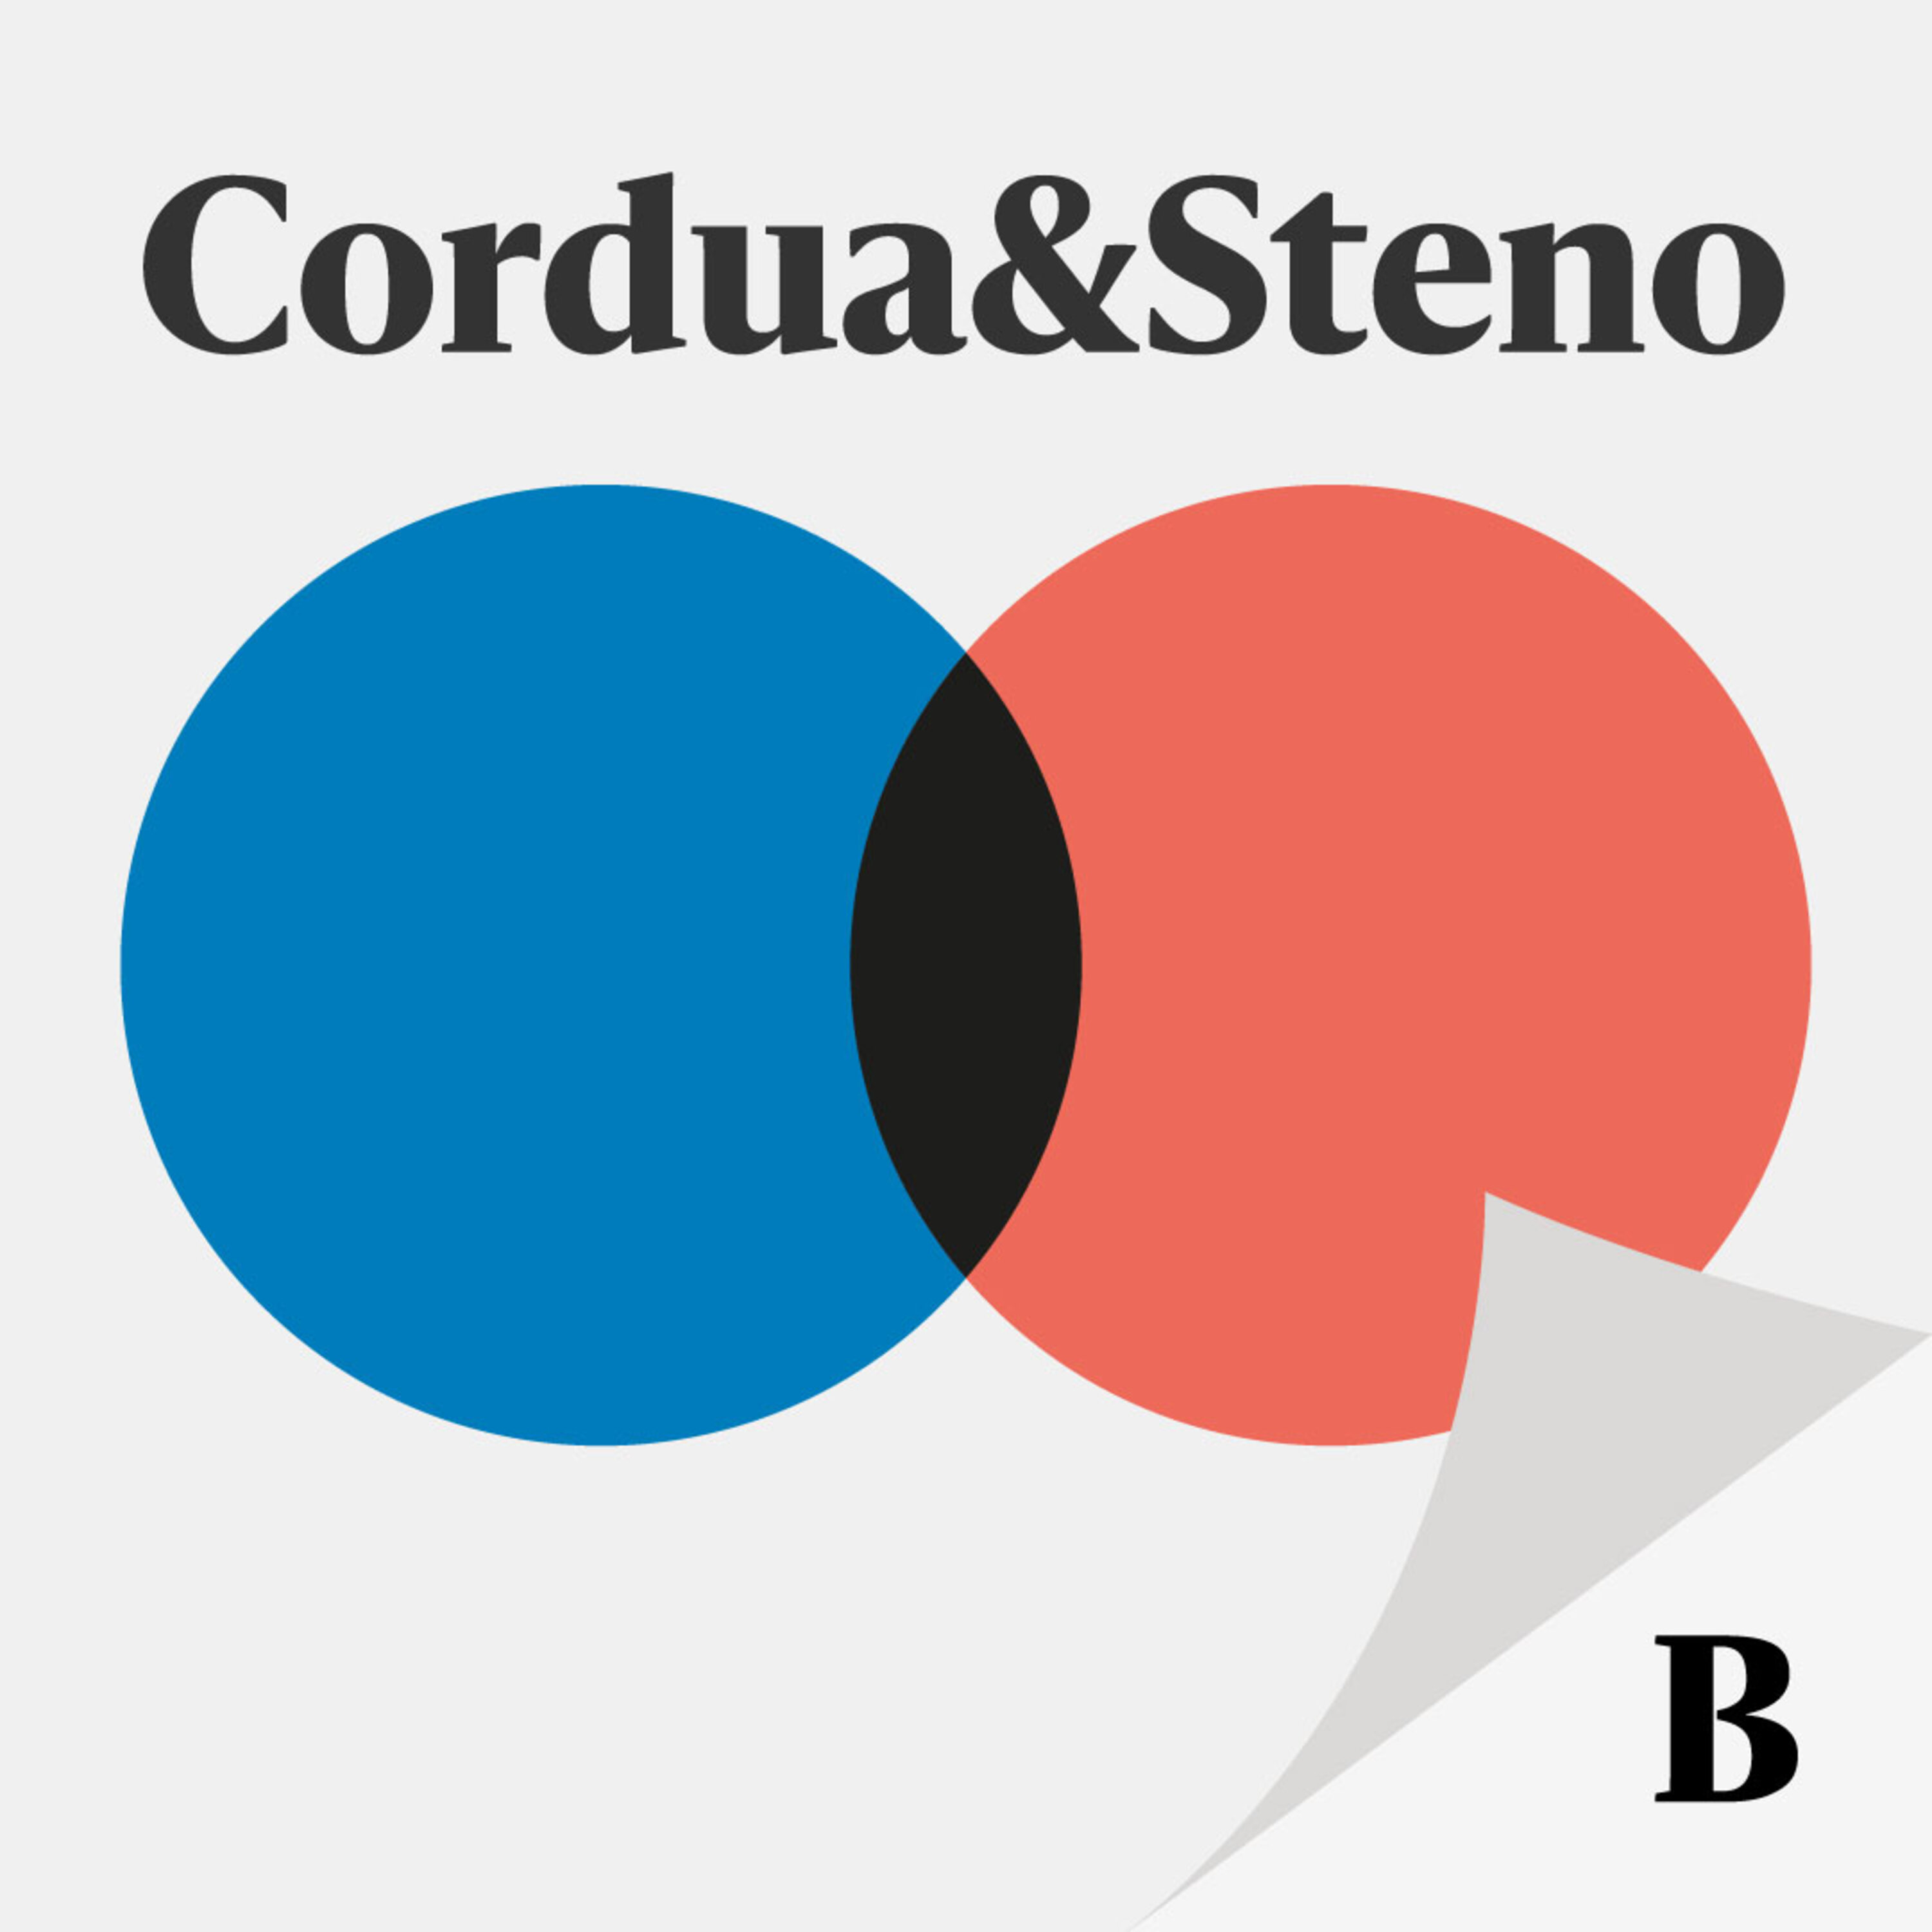 Cordua & Stenos valgspecial LIVE: S-regeringen er gået af – hvad nu?